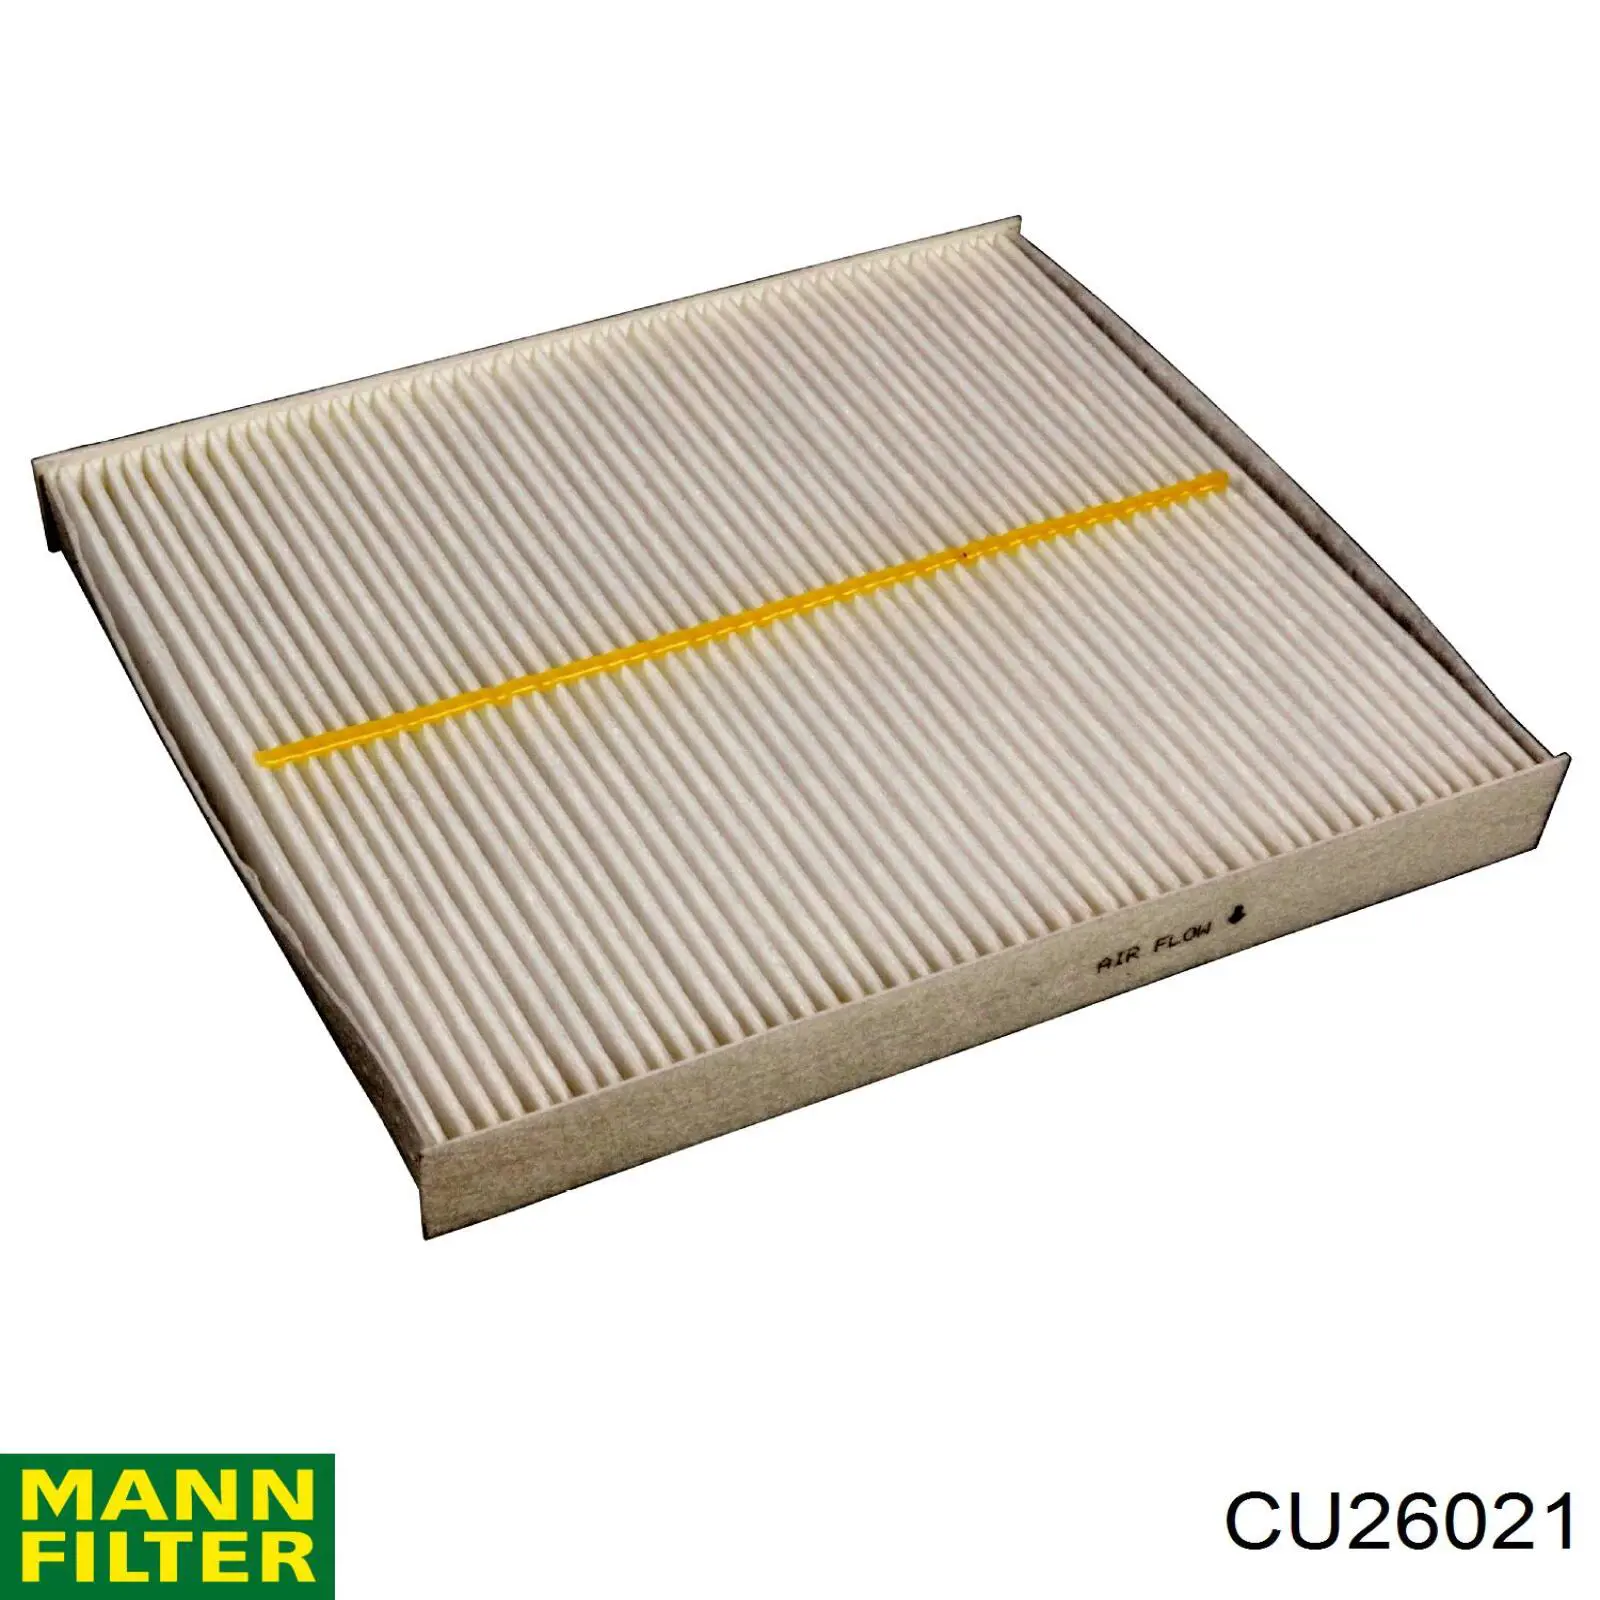 Filtro de habitáculo CU26021 Mann-Filter